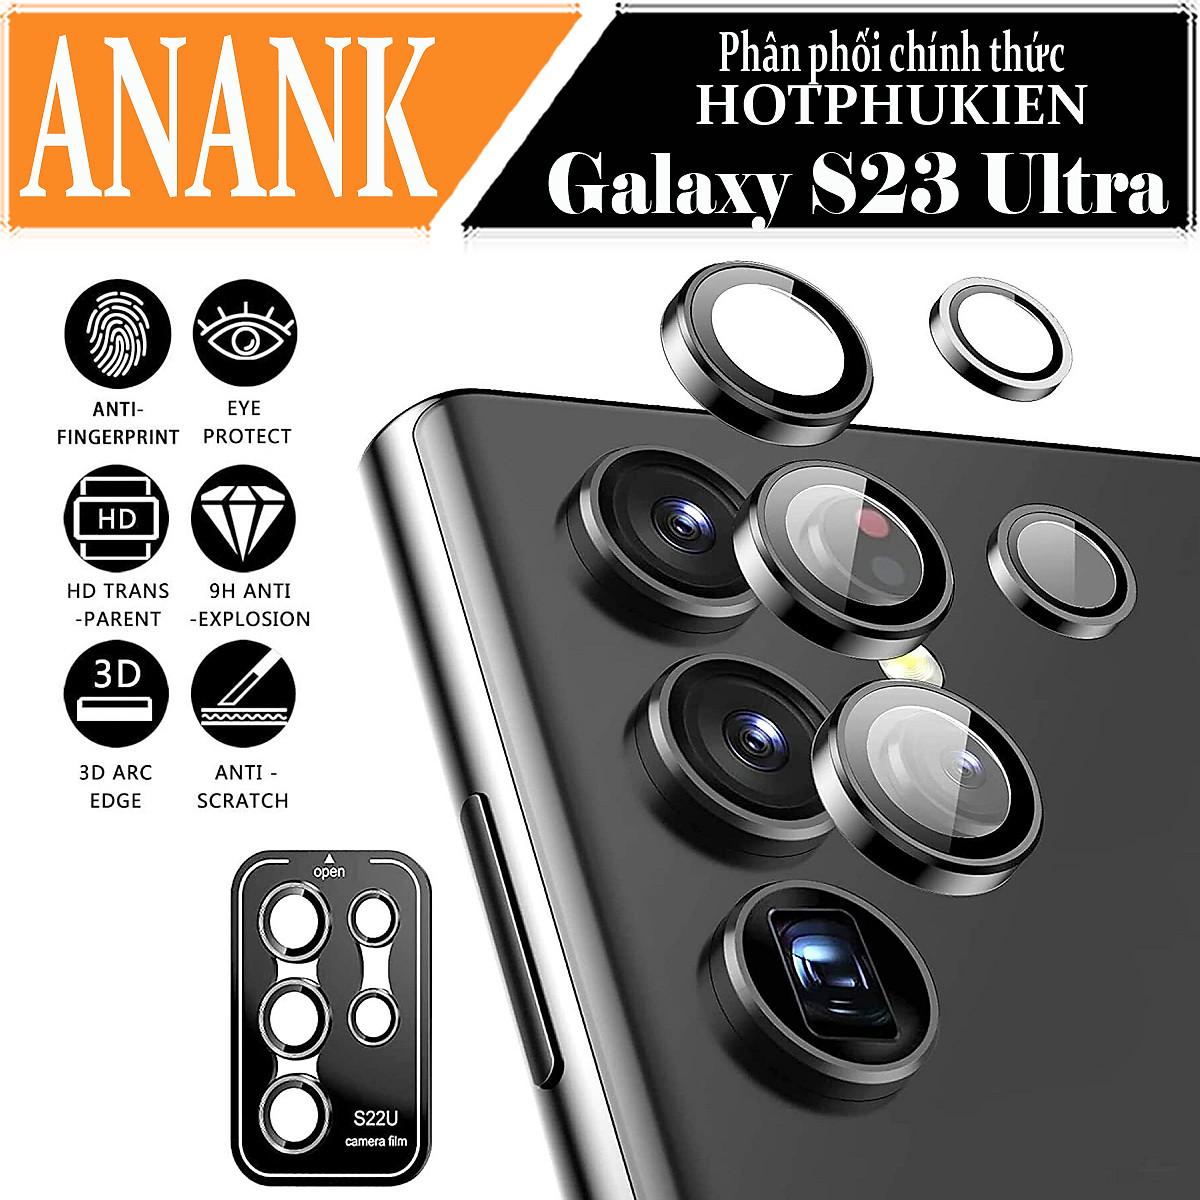 Tấm dán kính cường lực Camera cho Samsung Galaxy S23 Ultra hiệu ANANK - mặt kính AGC sắc nét với độ cứng 9H - hàng chính hãng